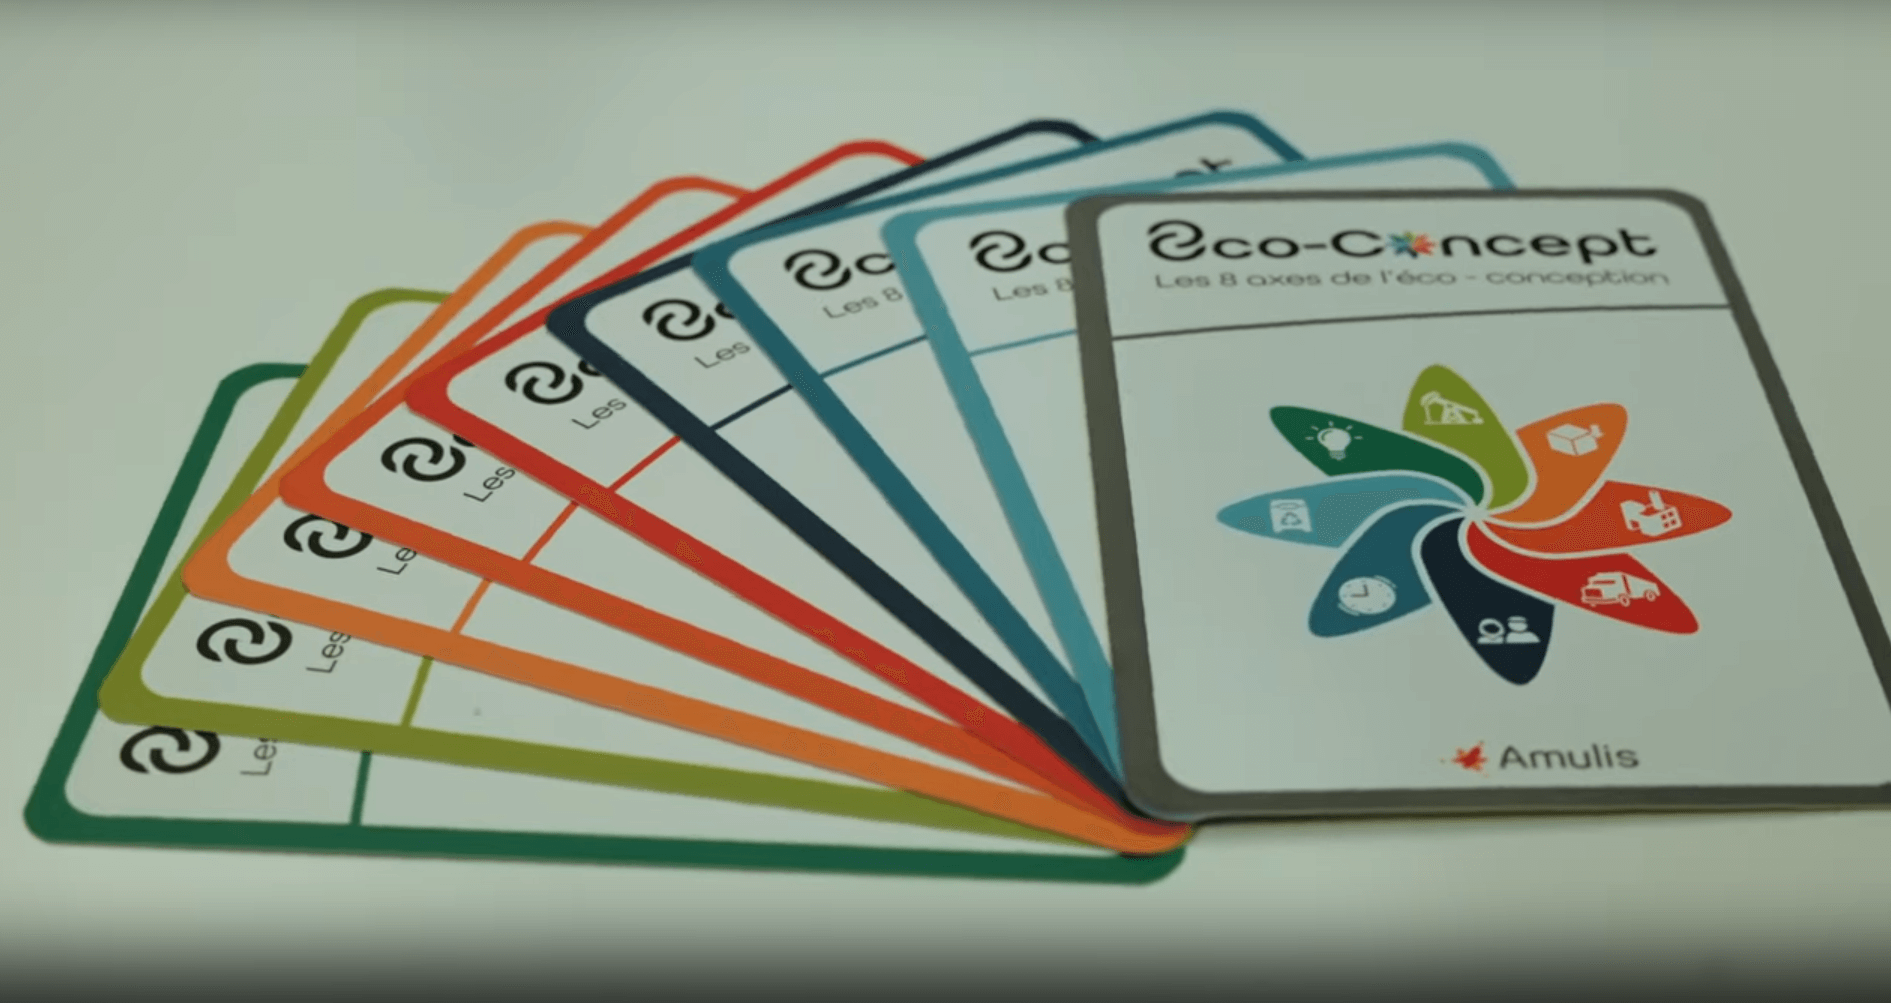 jeu de carte 8co-concept eco conception amulis